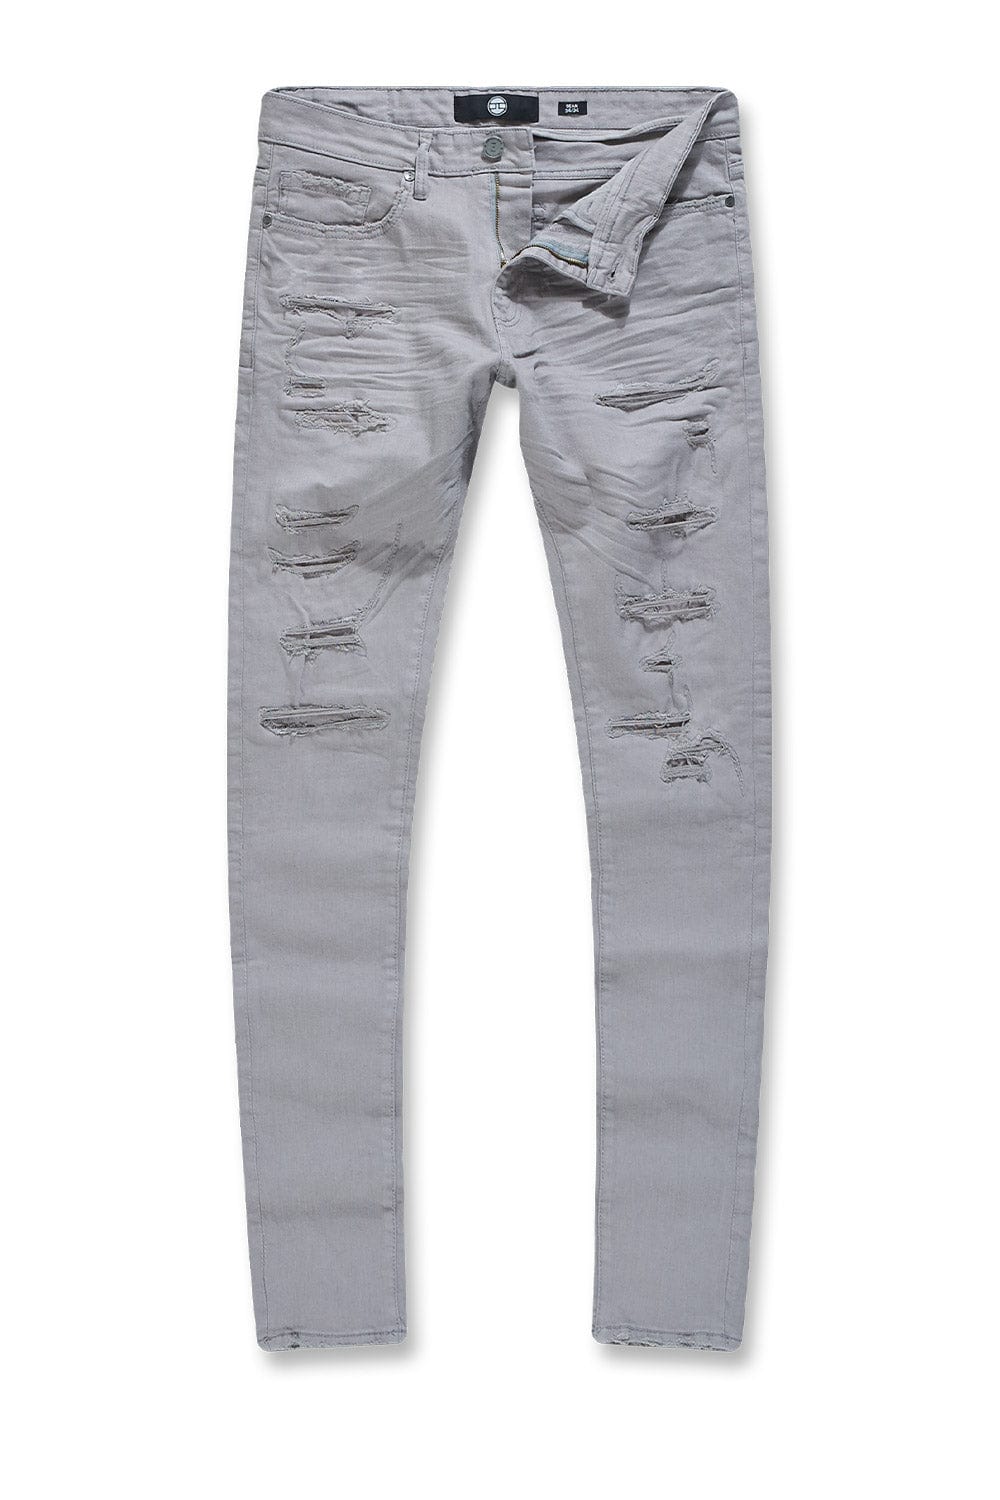 Jordan Craig Sean - Tribeca Twill Pants (Exclusive Colors) Light Grey / 30/32